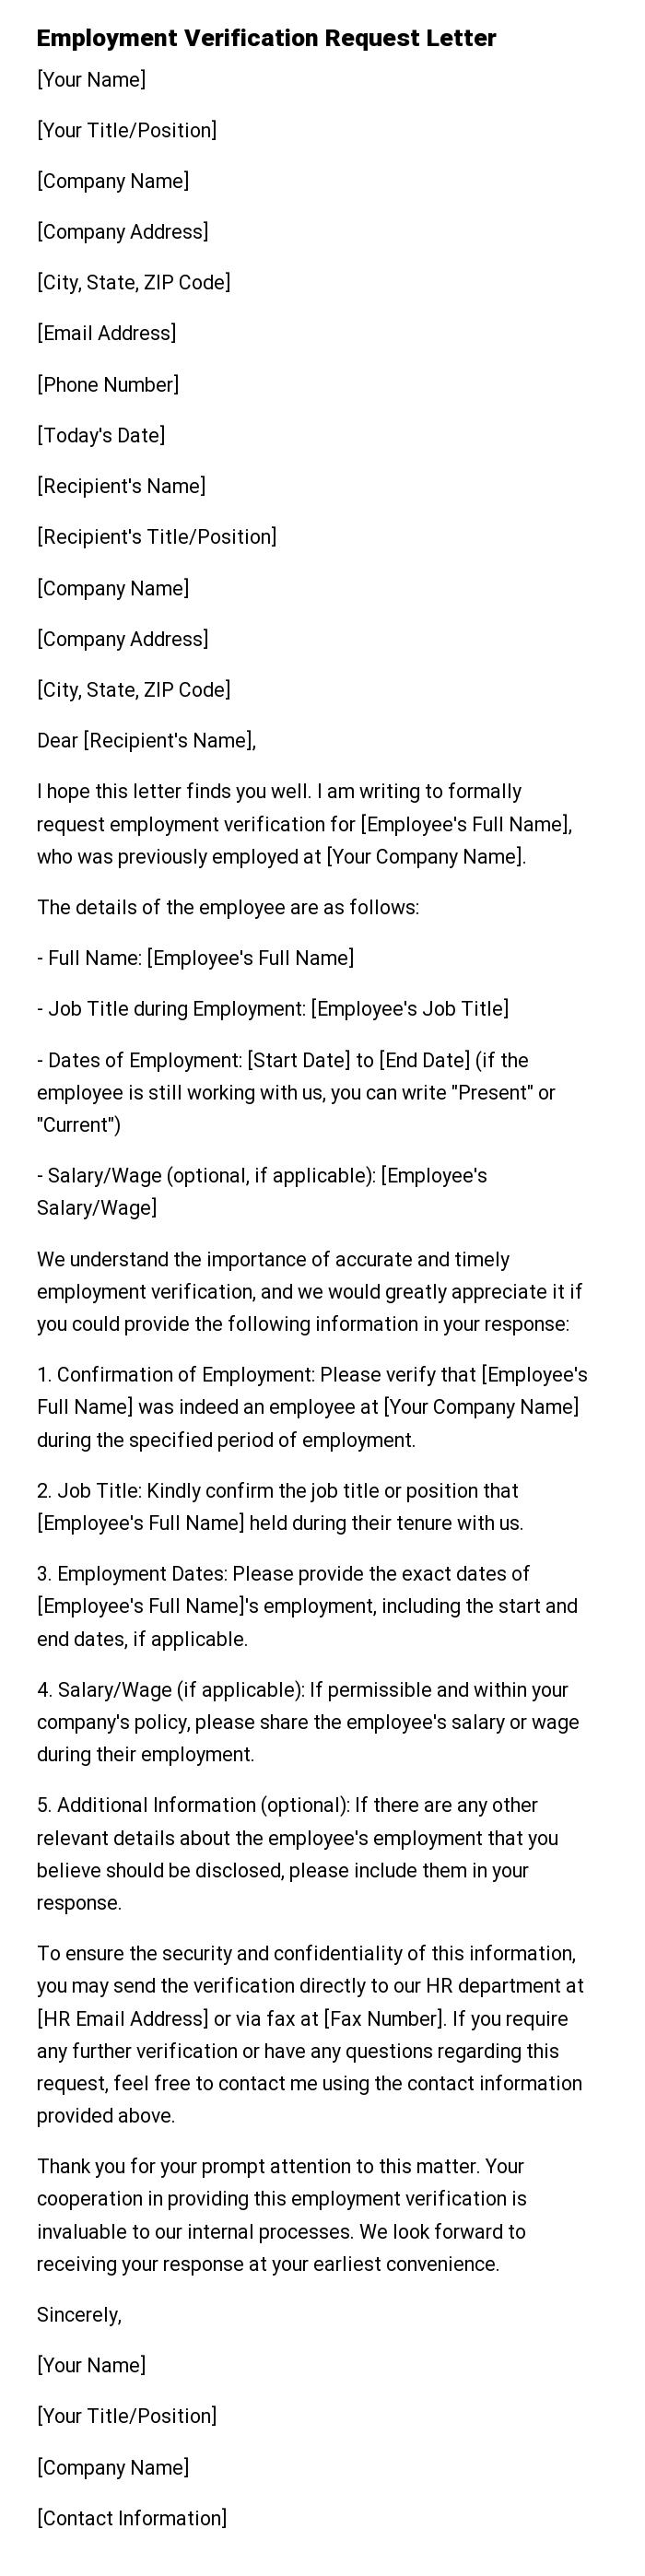 Employment Verification Request Letter